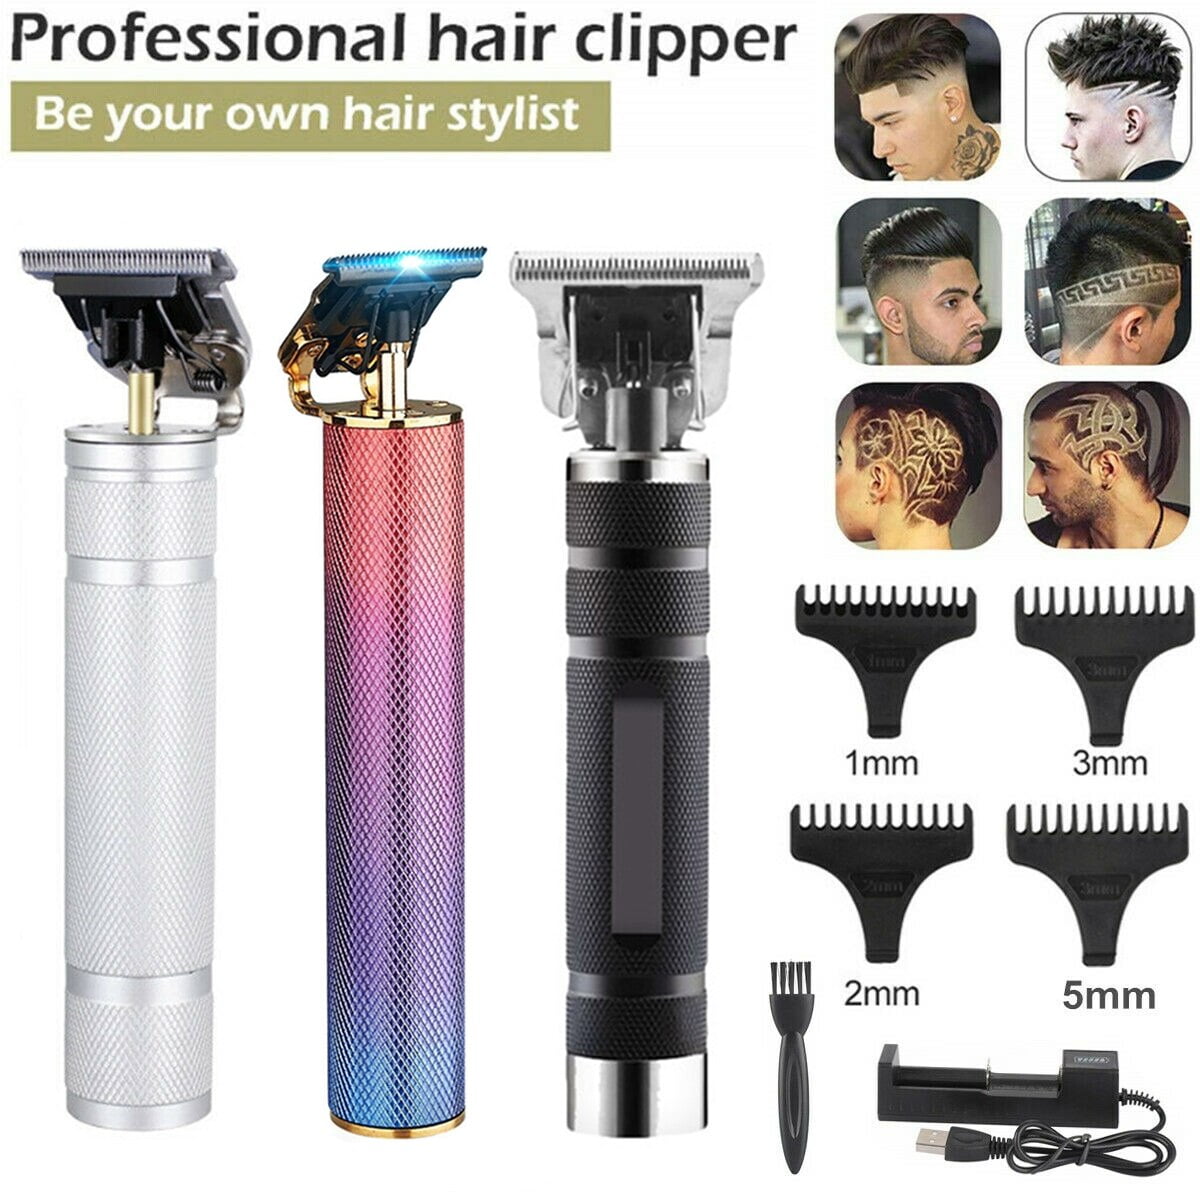 hair clippers walmart